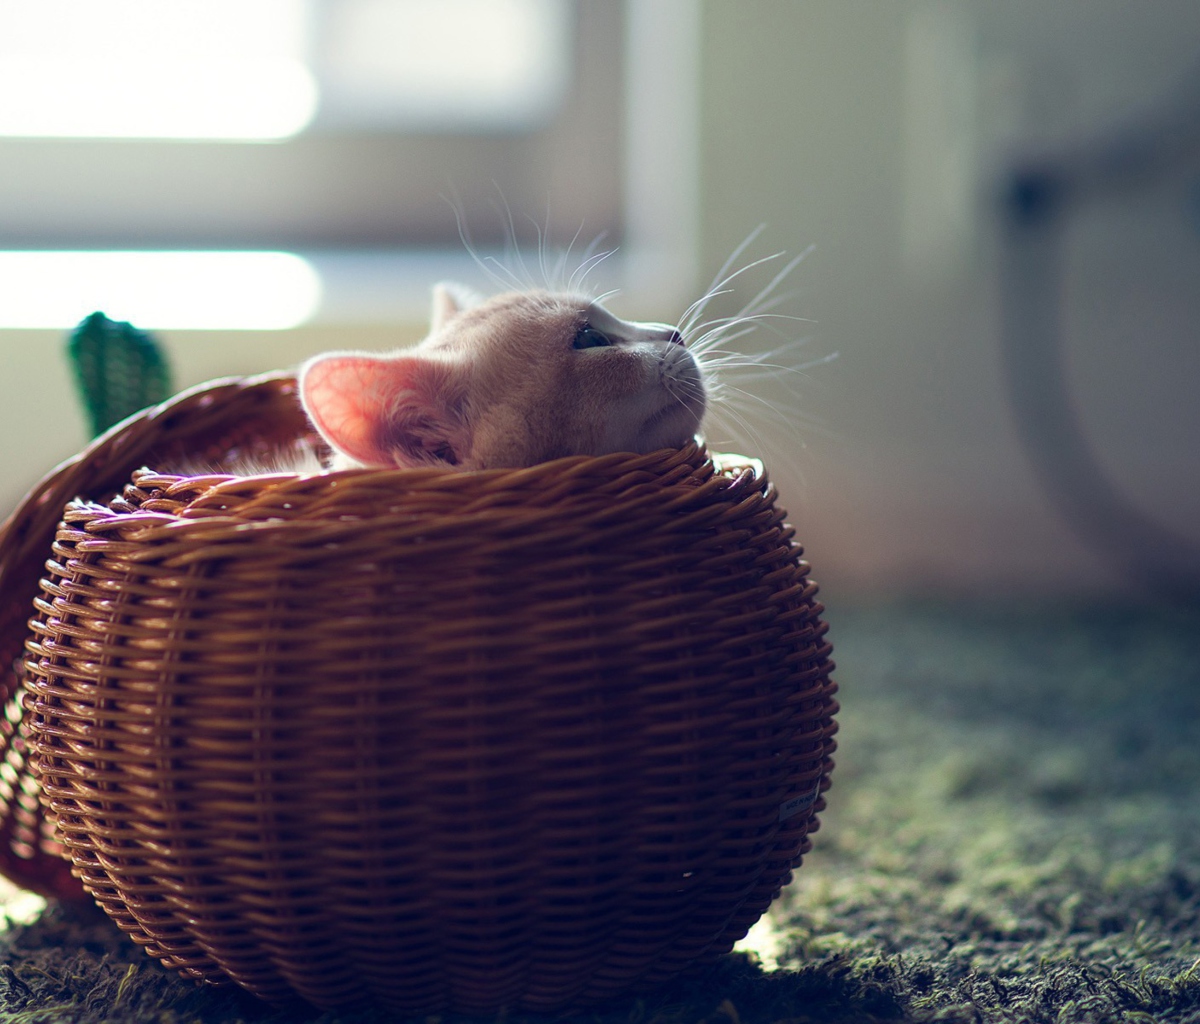 Cute Kitten In Basket wallpaper 1200x1024